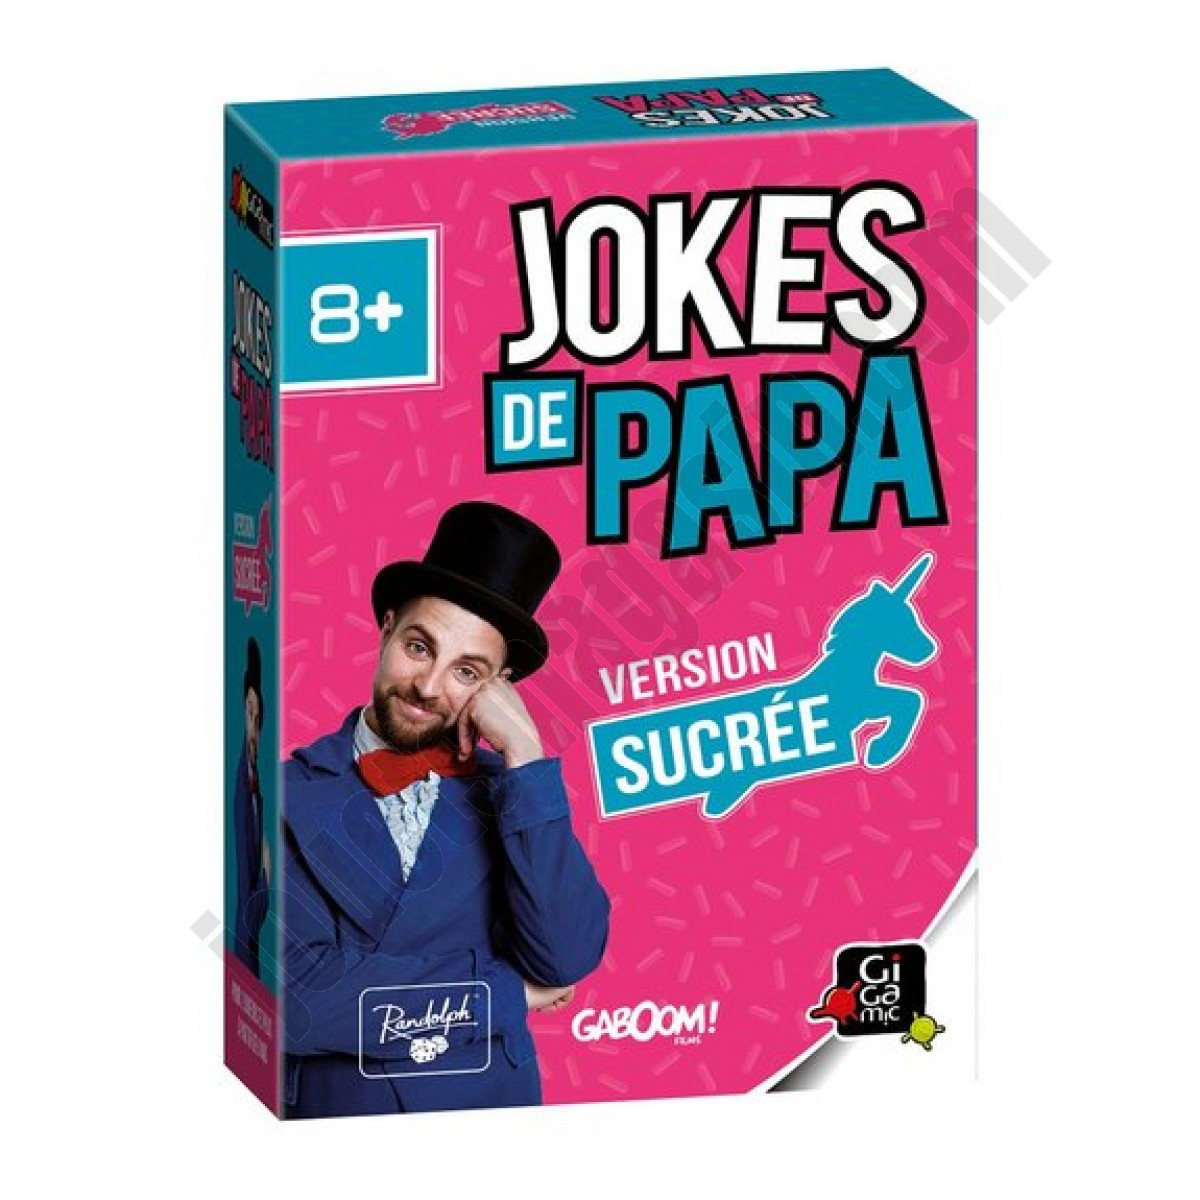 Jokes de Papa - Version sucrée ◆◆◆ Nouveau - Jokes de Papa - Version sucrée ◆◆◆ Nouveau